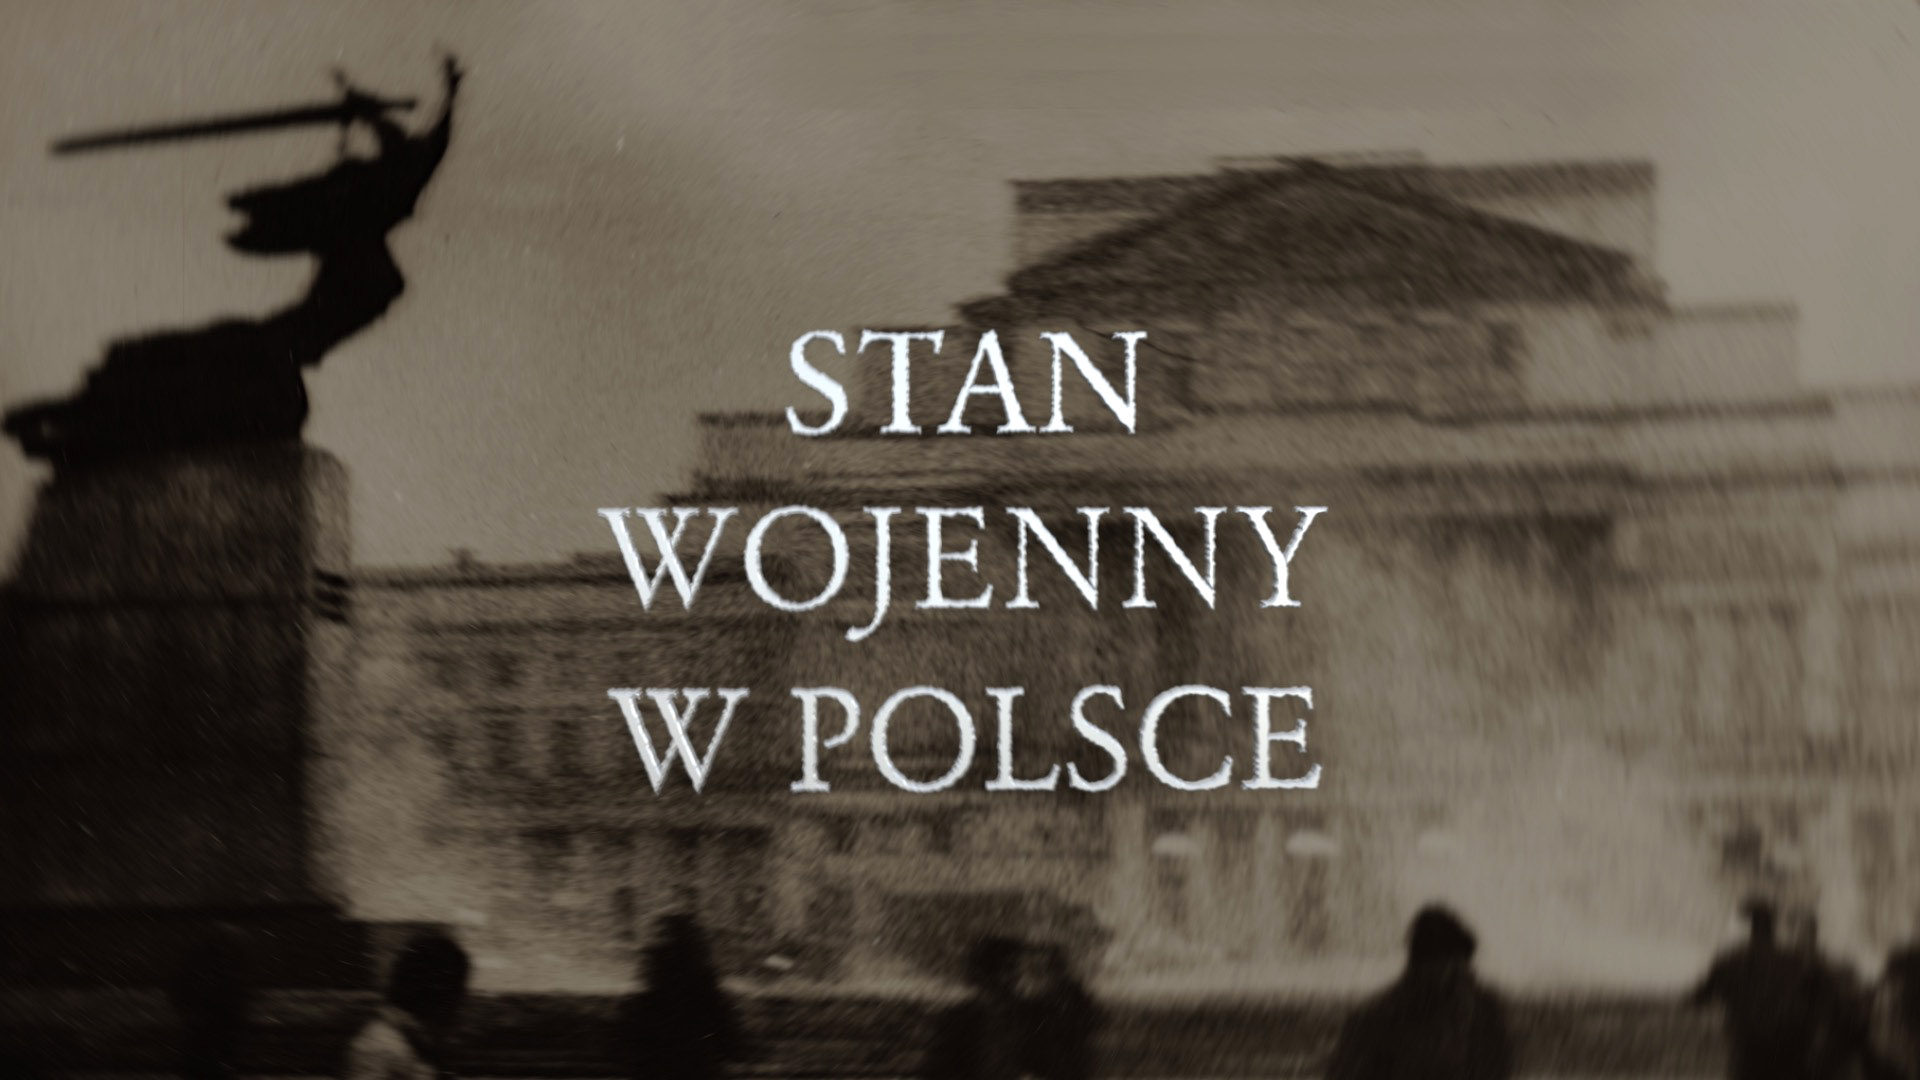 Polska pamięta. 38 rocznica wprowadzenia stanu wojennego (1981-1983)